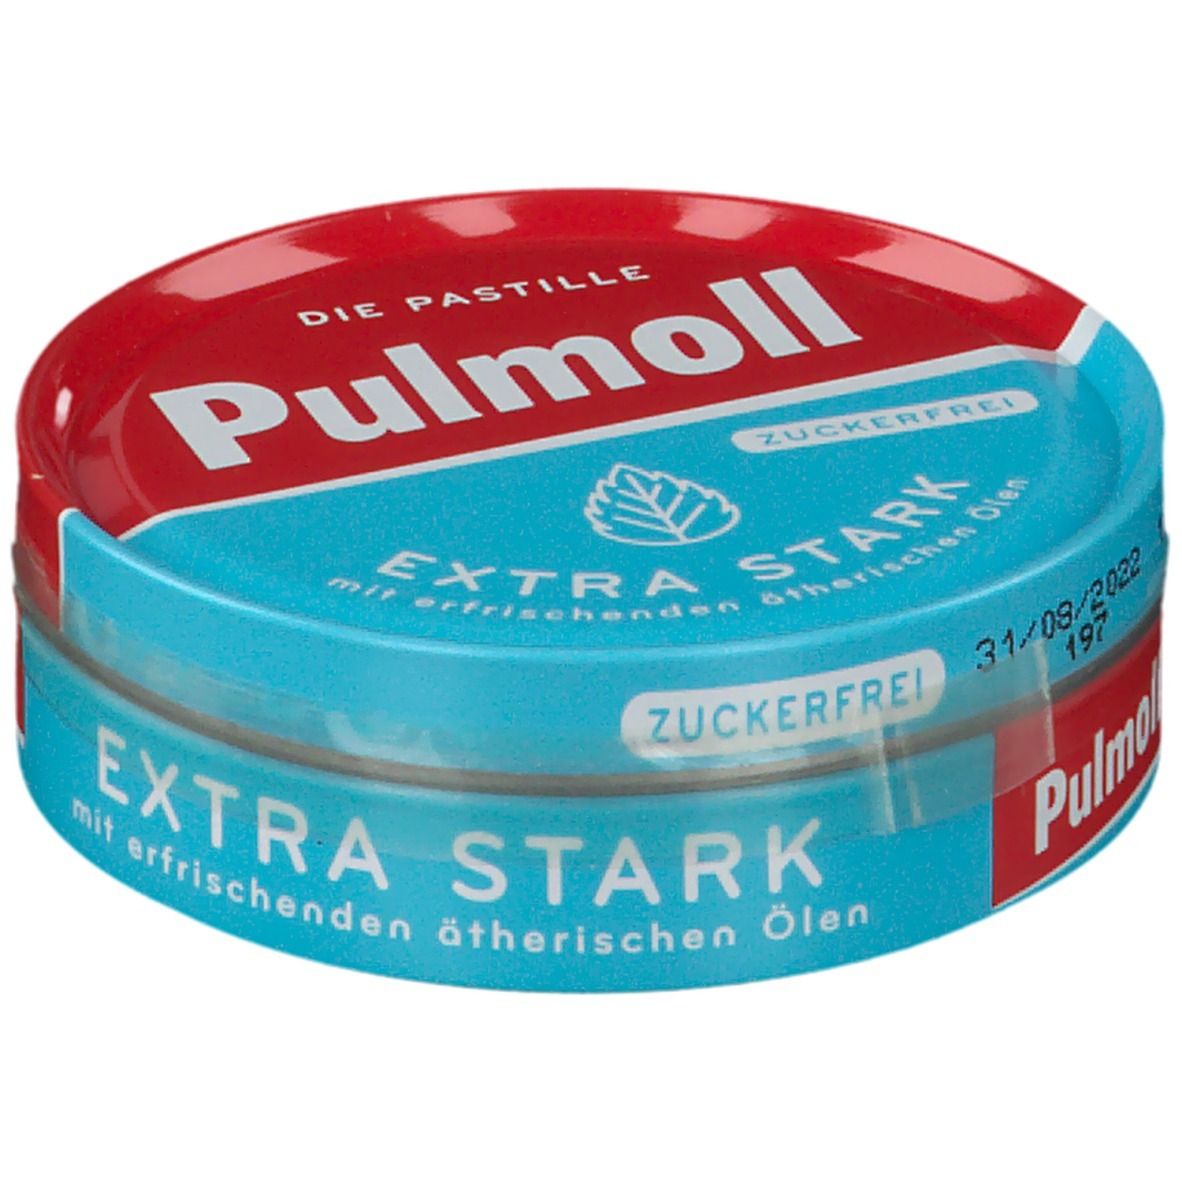 Pulmoll® Hustenbonbons extra stark zuckerfrei